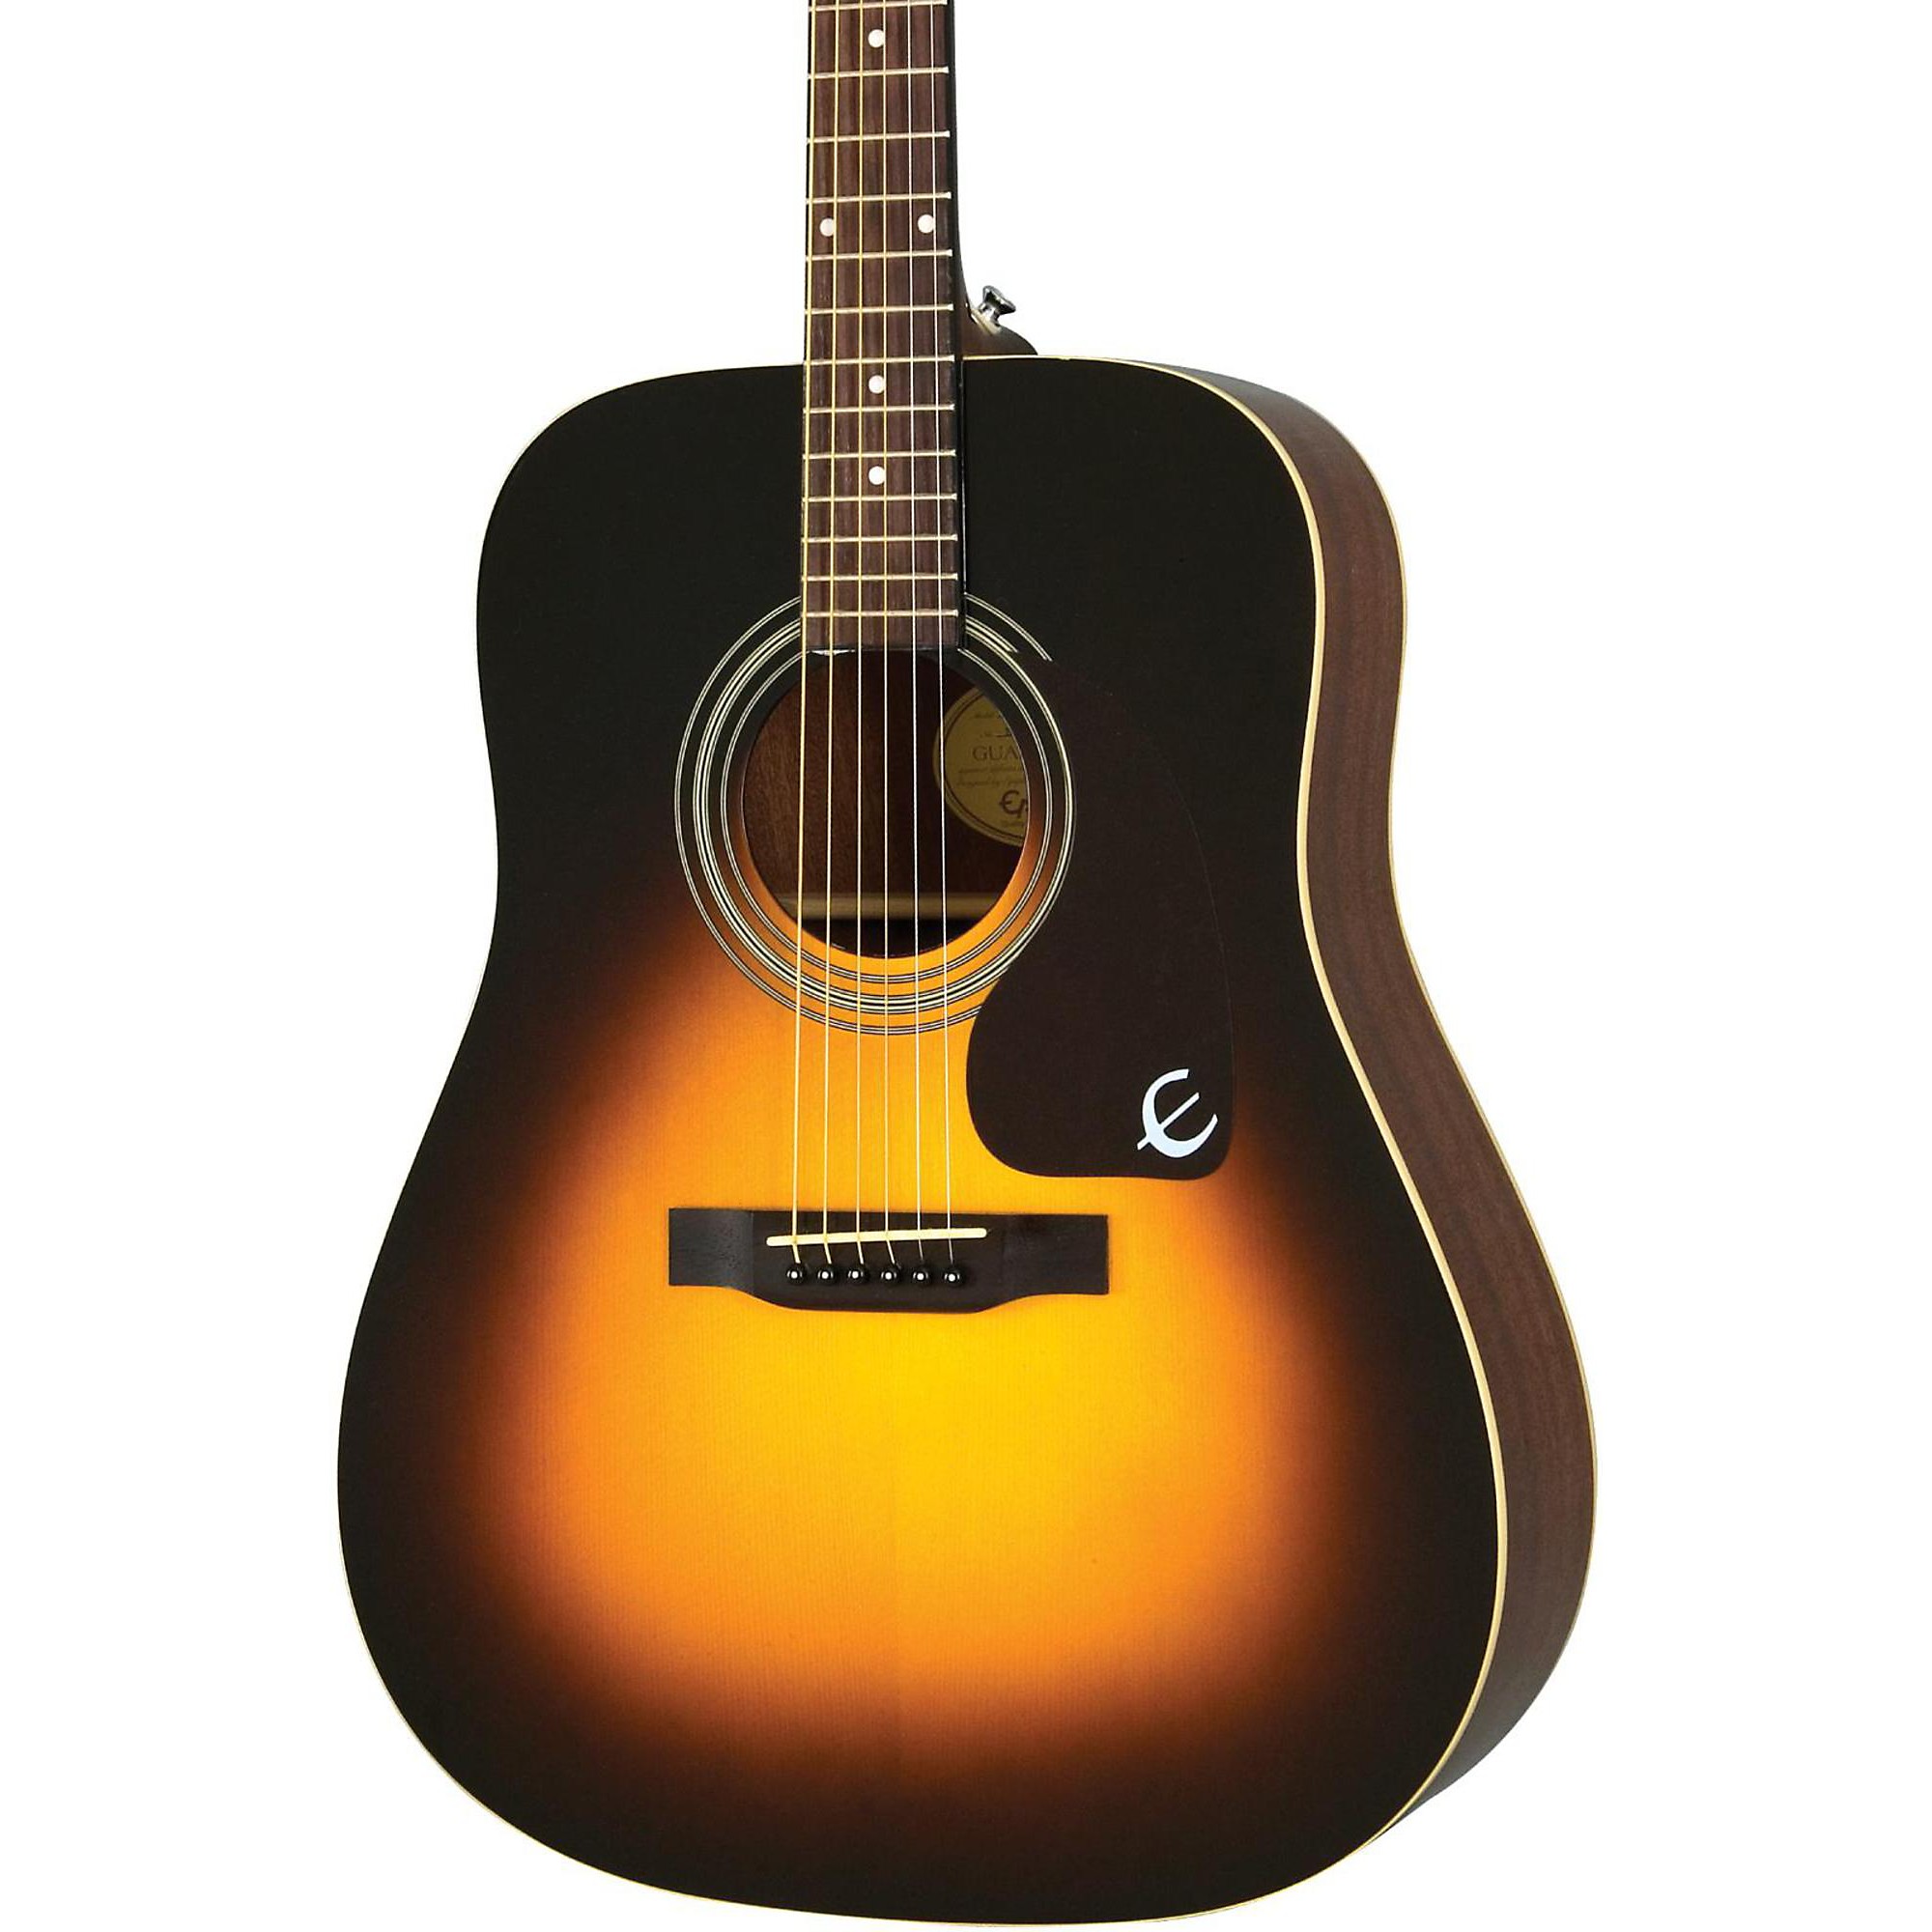 Акустическая гитара Epiphone PR-150 Vintage Sunburst акустическая гитара crafter hd 250 vs vintage sunburst